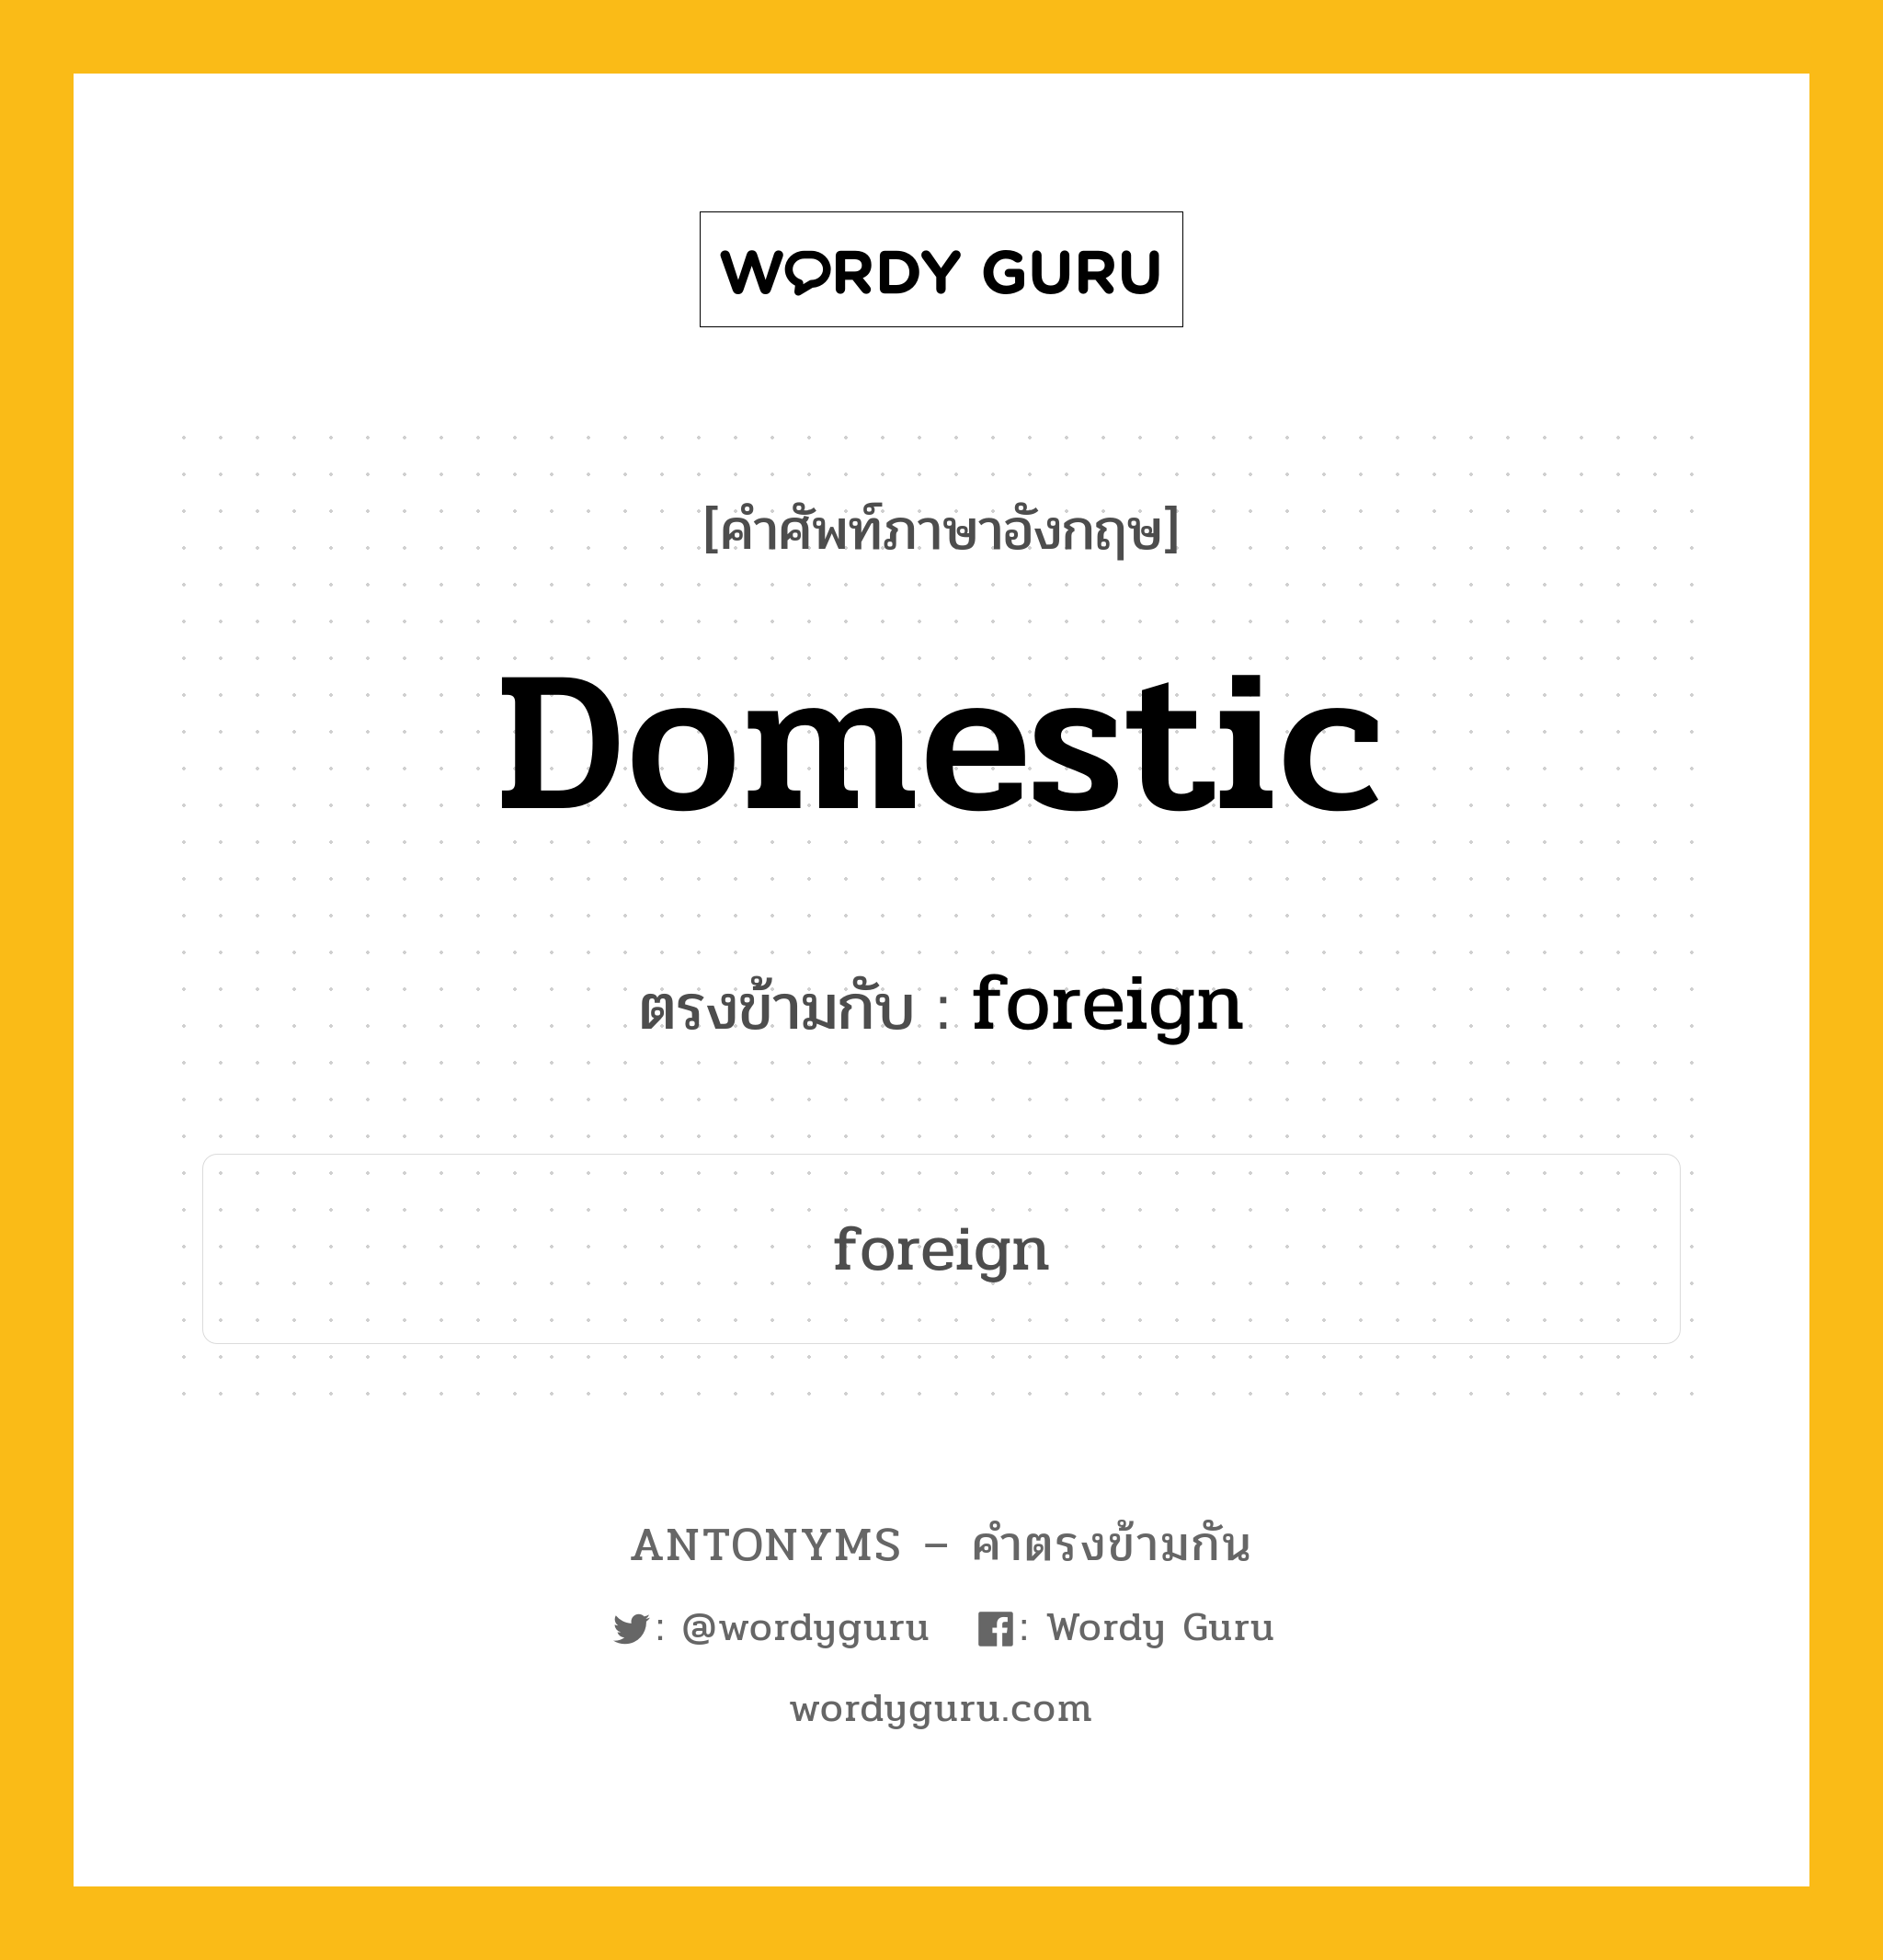 domestic เป็นคำตรงข้ามกับคำไหนบ้าง?, คำศัพท์ภาษาอังกฤษ domestic ตรงข้ามกับ foreign หมวด foreign